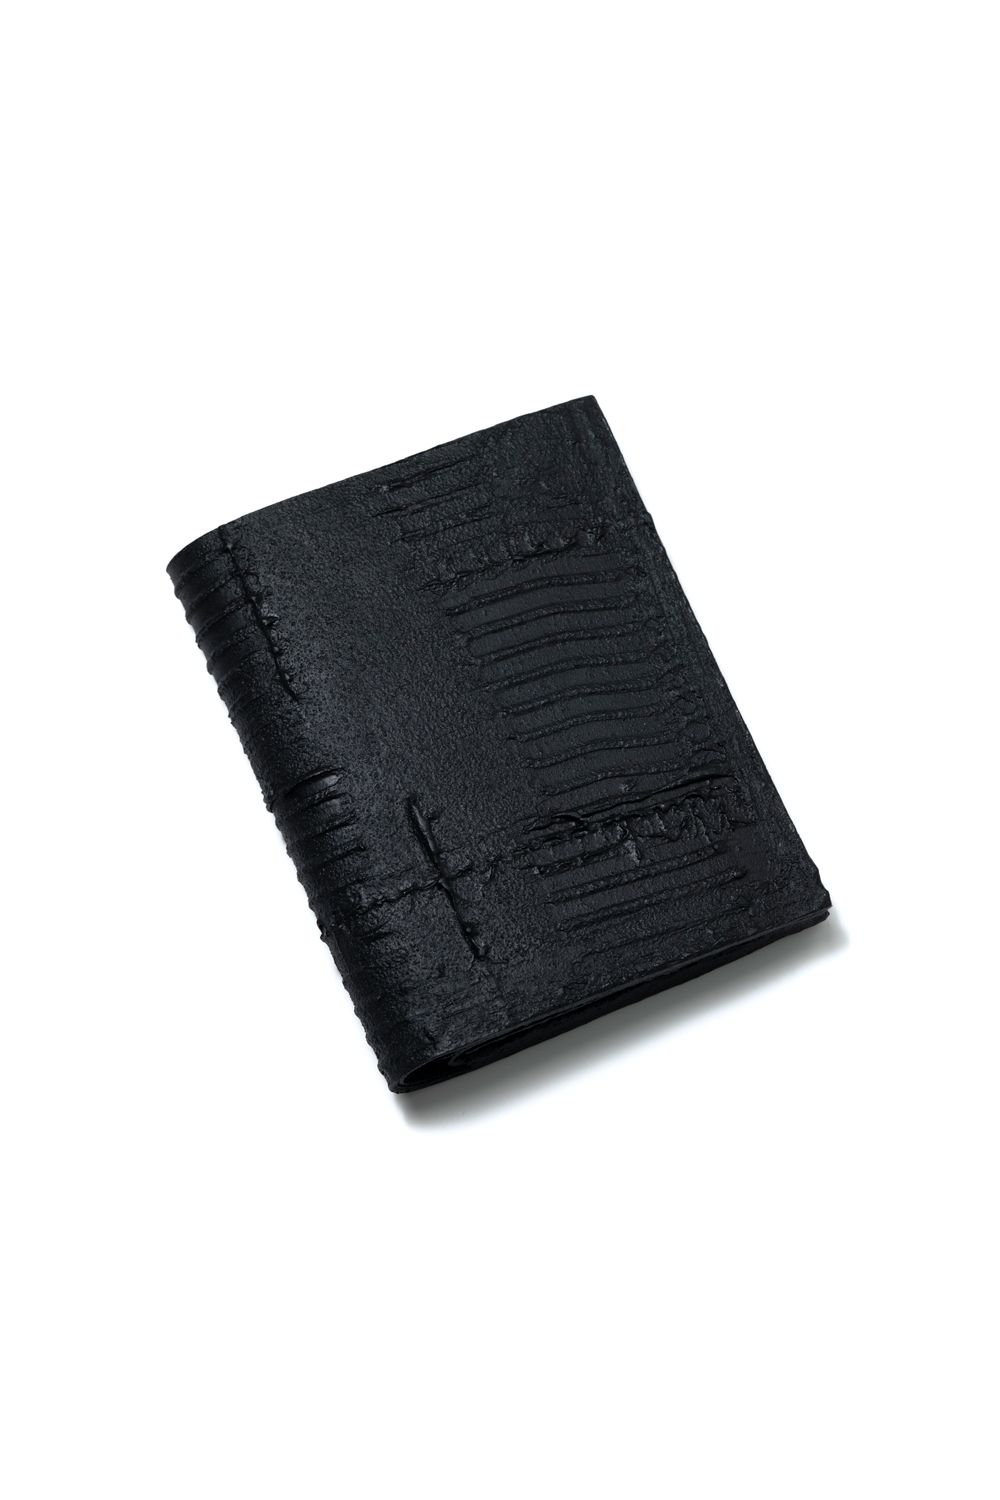 KAGARI YUSUKE - 二つ折り財布 [黒い壁] / mw20-bk | BONITA 